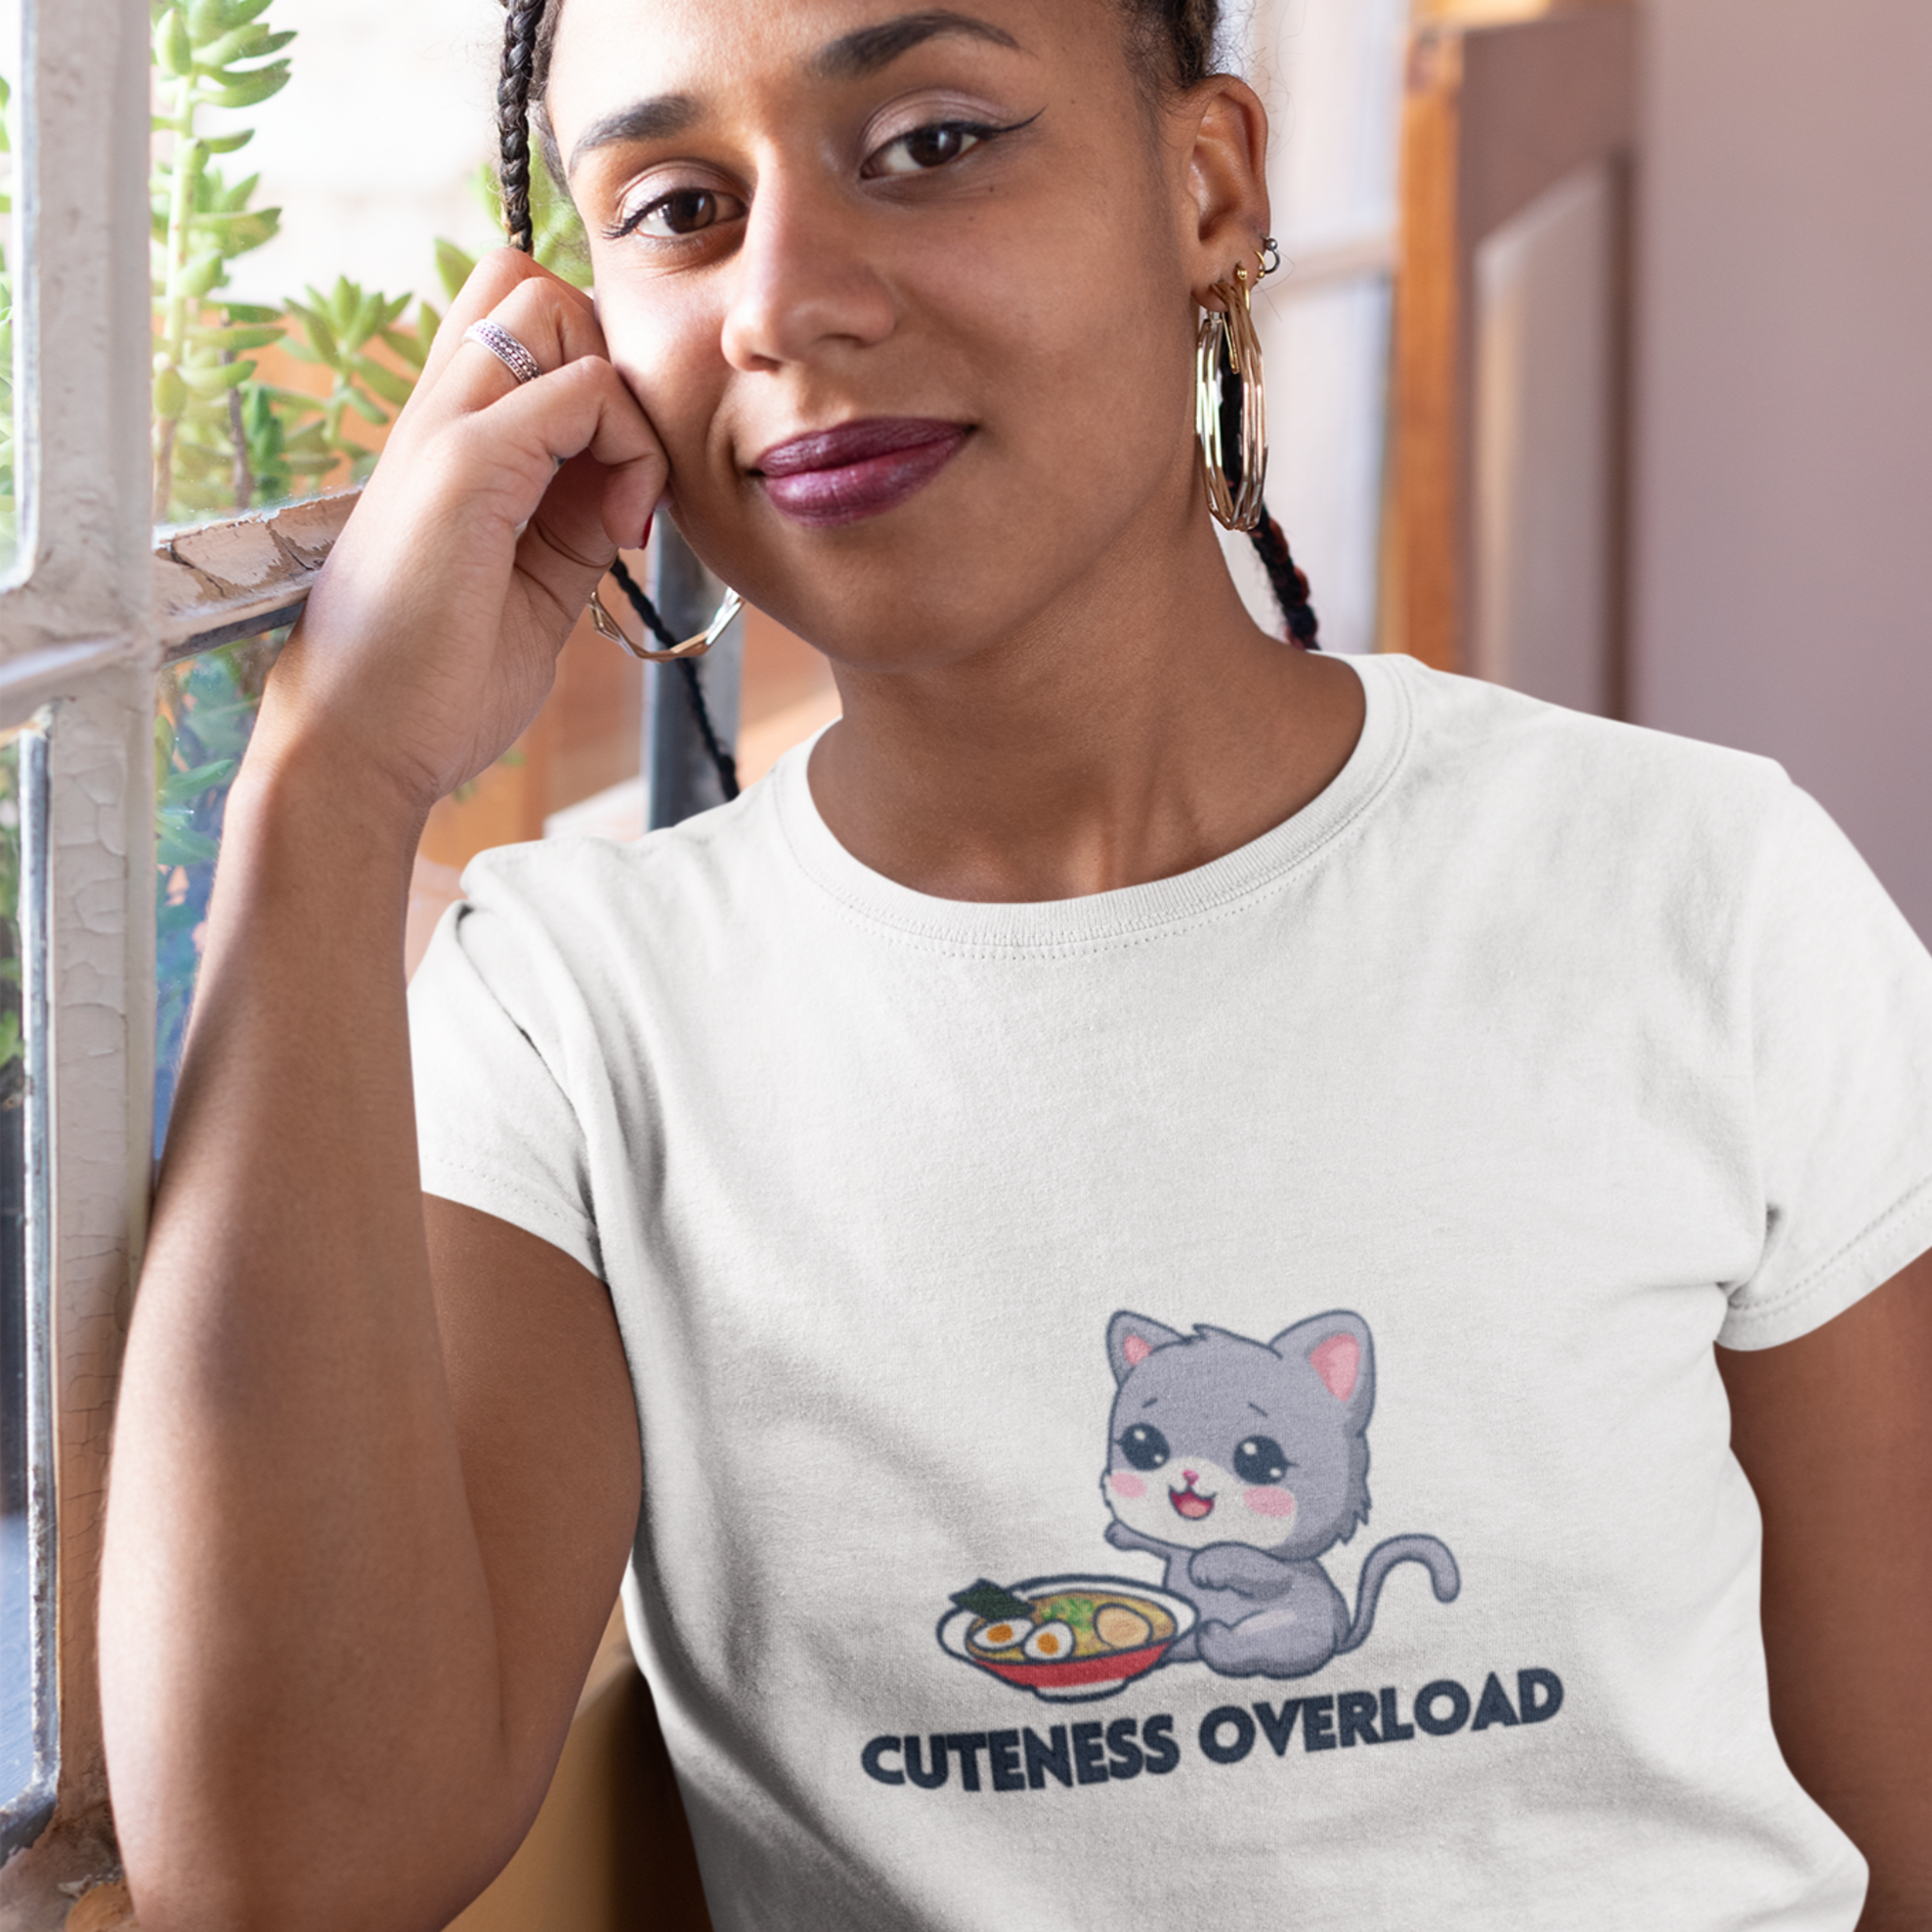 Ramen T-shirt - "Cuteness Overload" - Japanese Foodie Shirt with Adorable Kitten and Ramen Art